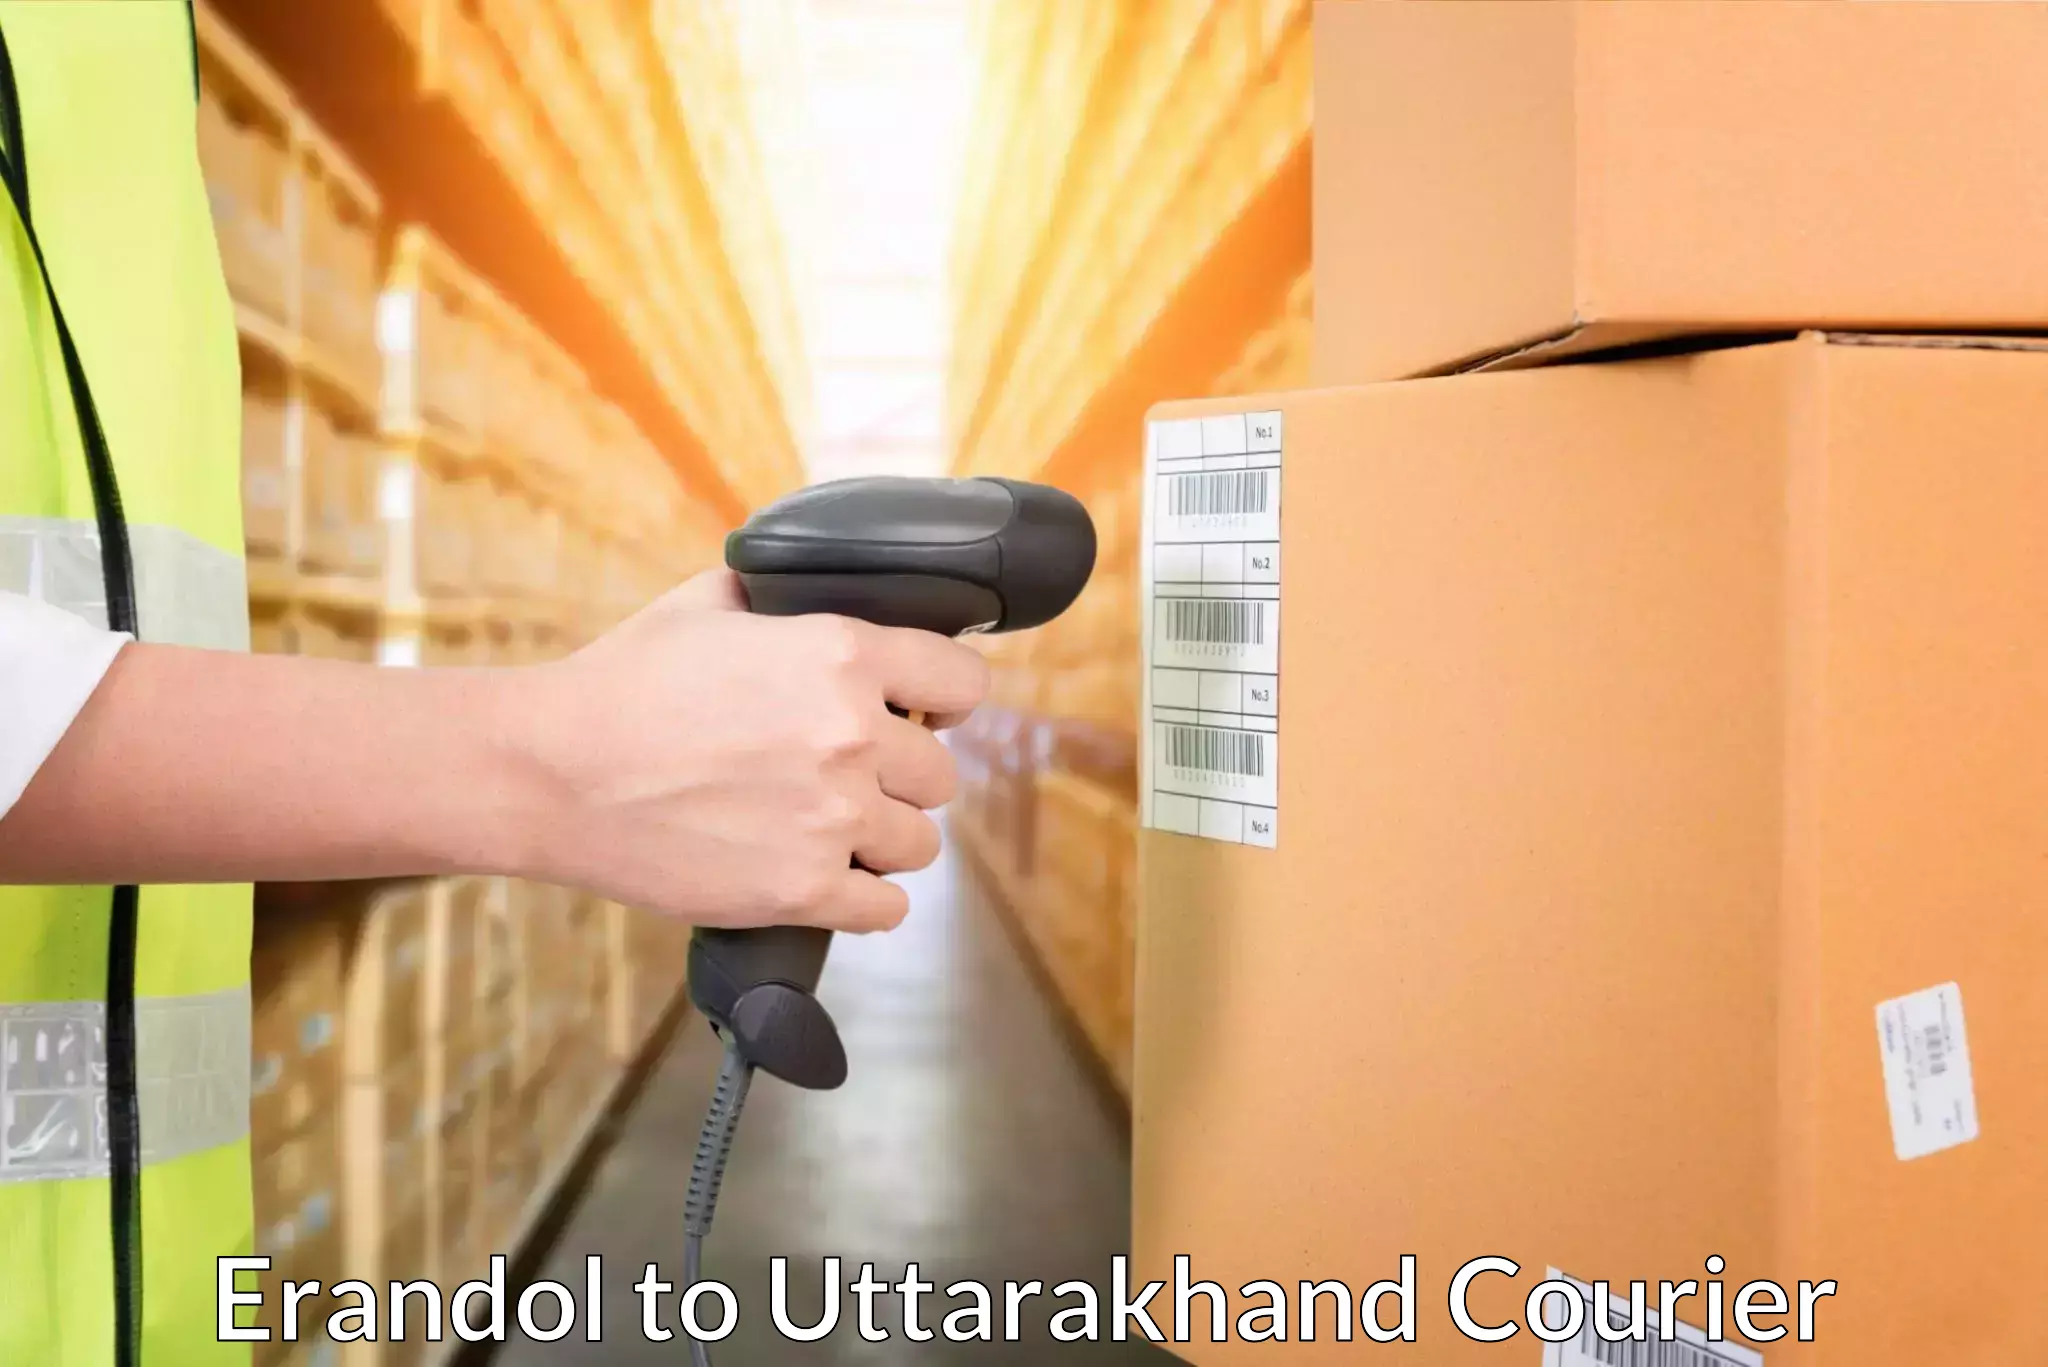 Affordable parcel service Erandol to Tehri Garhwal